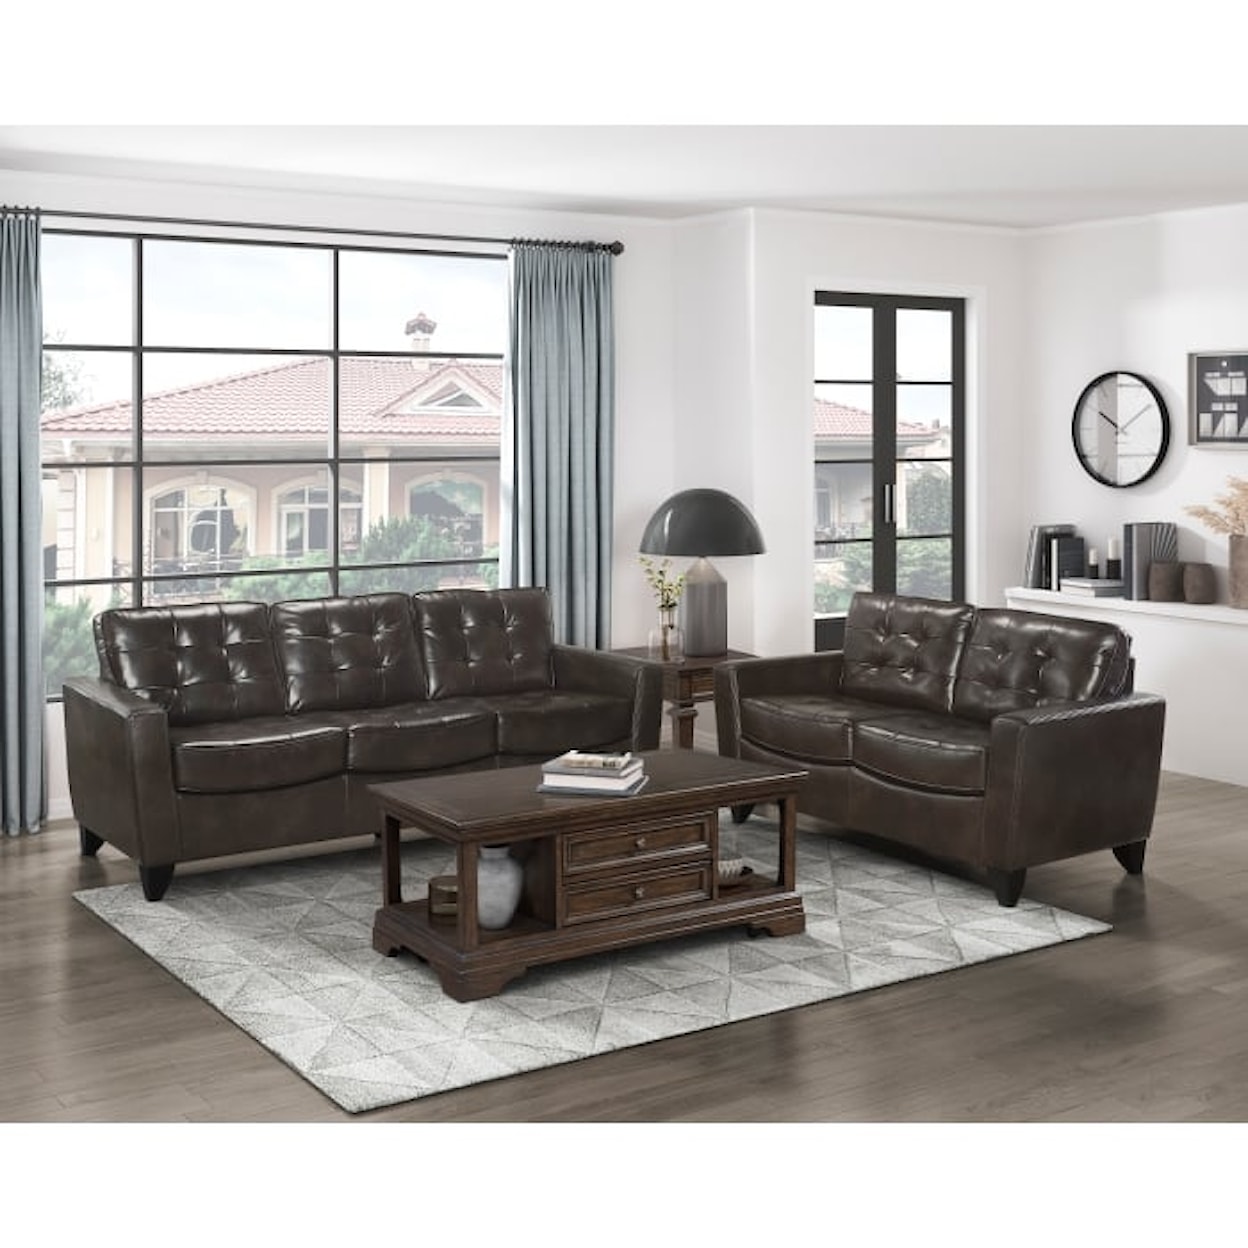 Homelegance Furniture Donegal Living Room Set